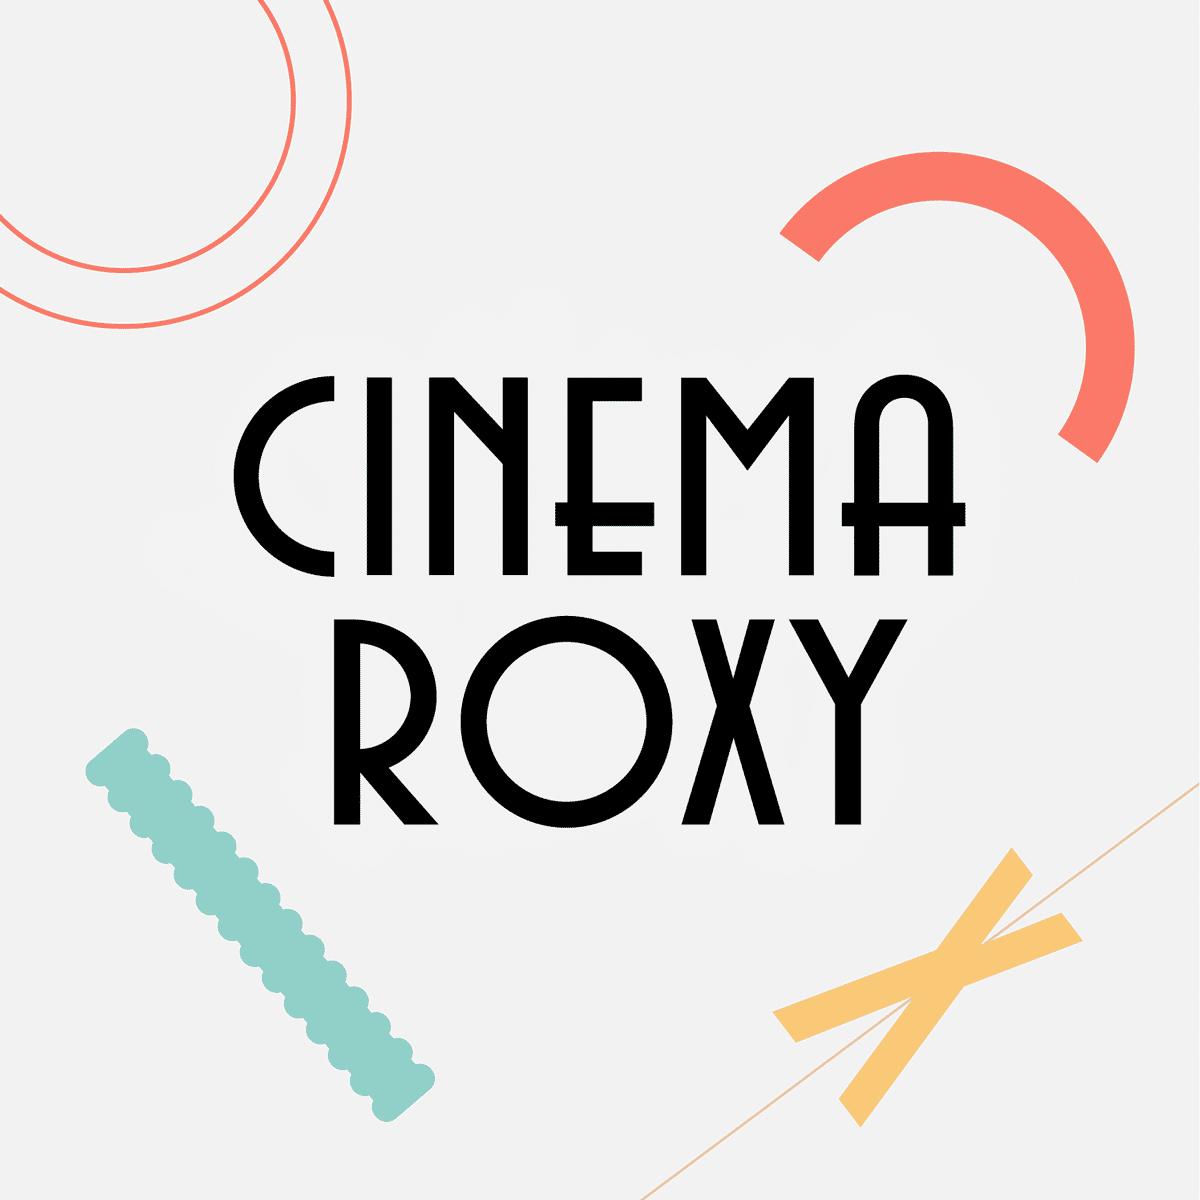 cinema roxy ROXY logo Music Concerts living room concert julia kent roosbeef art deco Adobe Live branding 